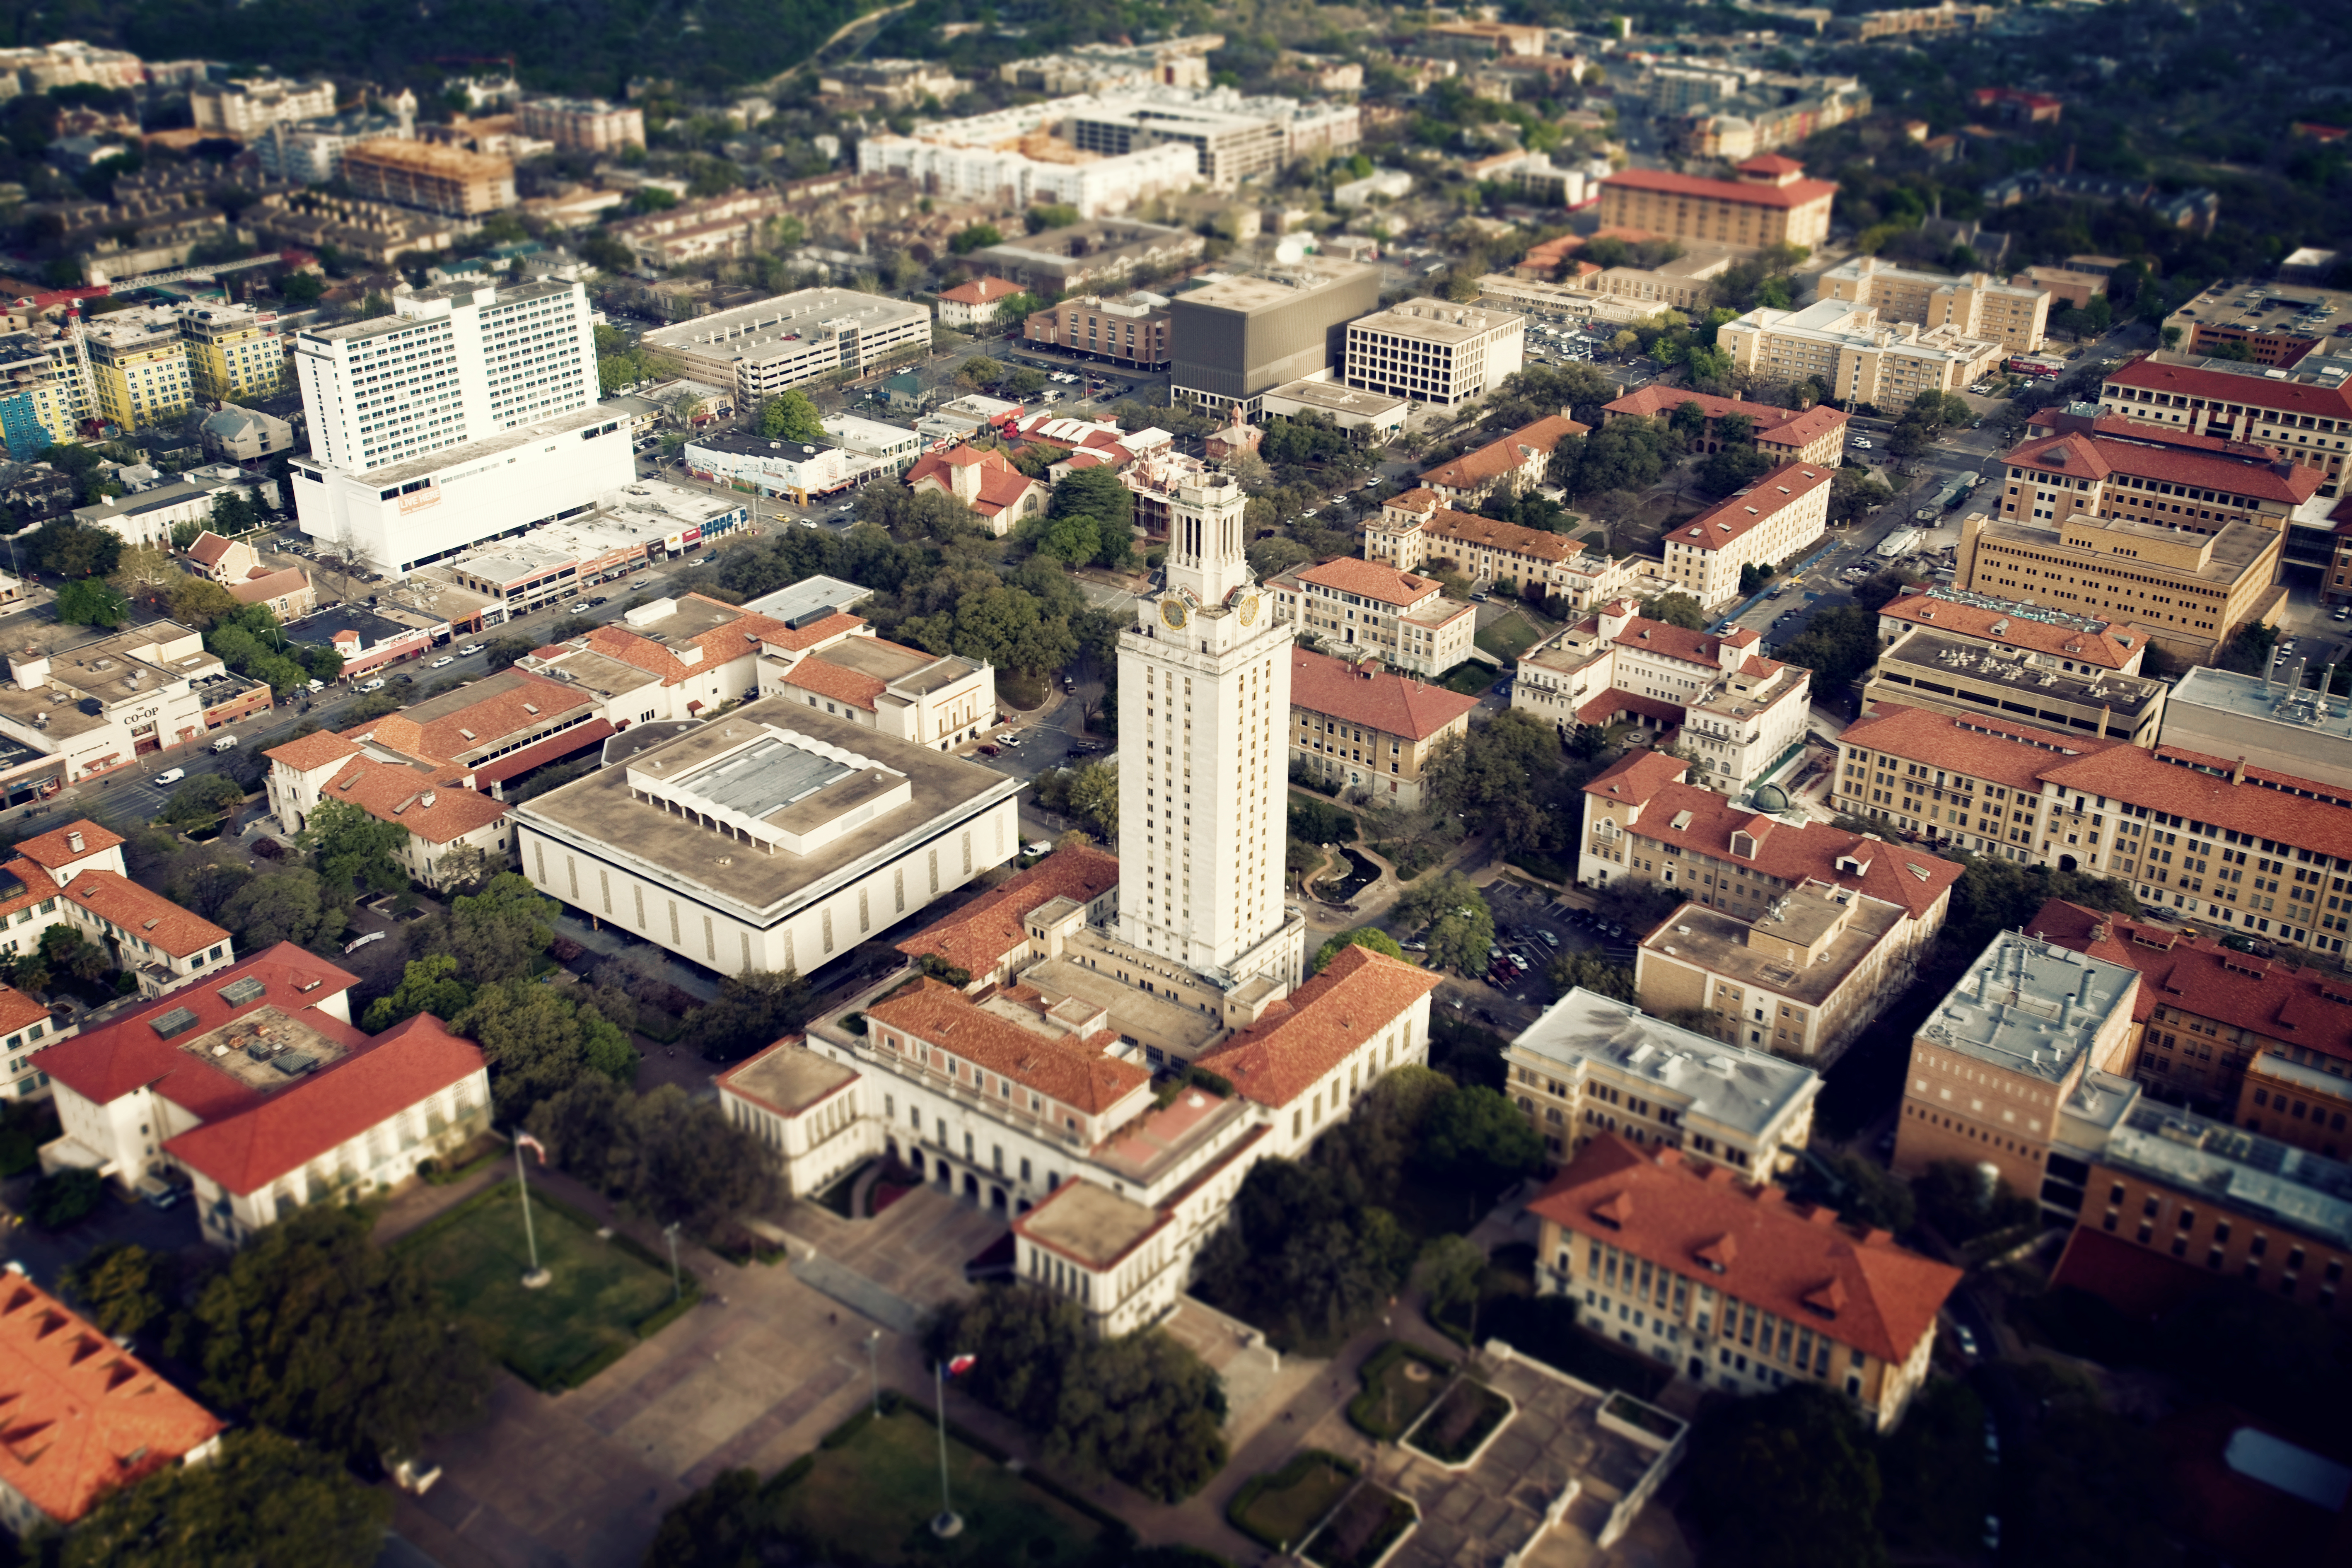 University of Texas Campus Aerial